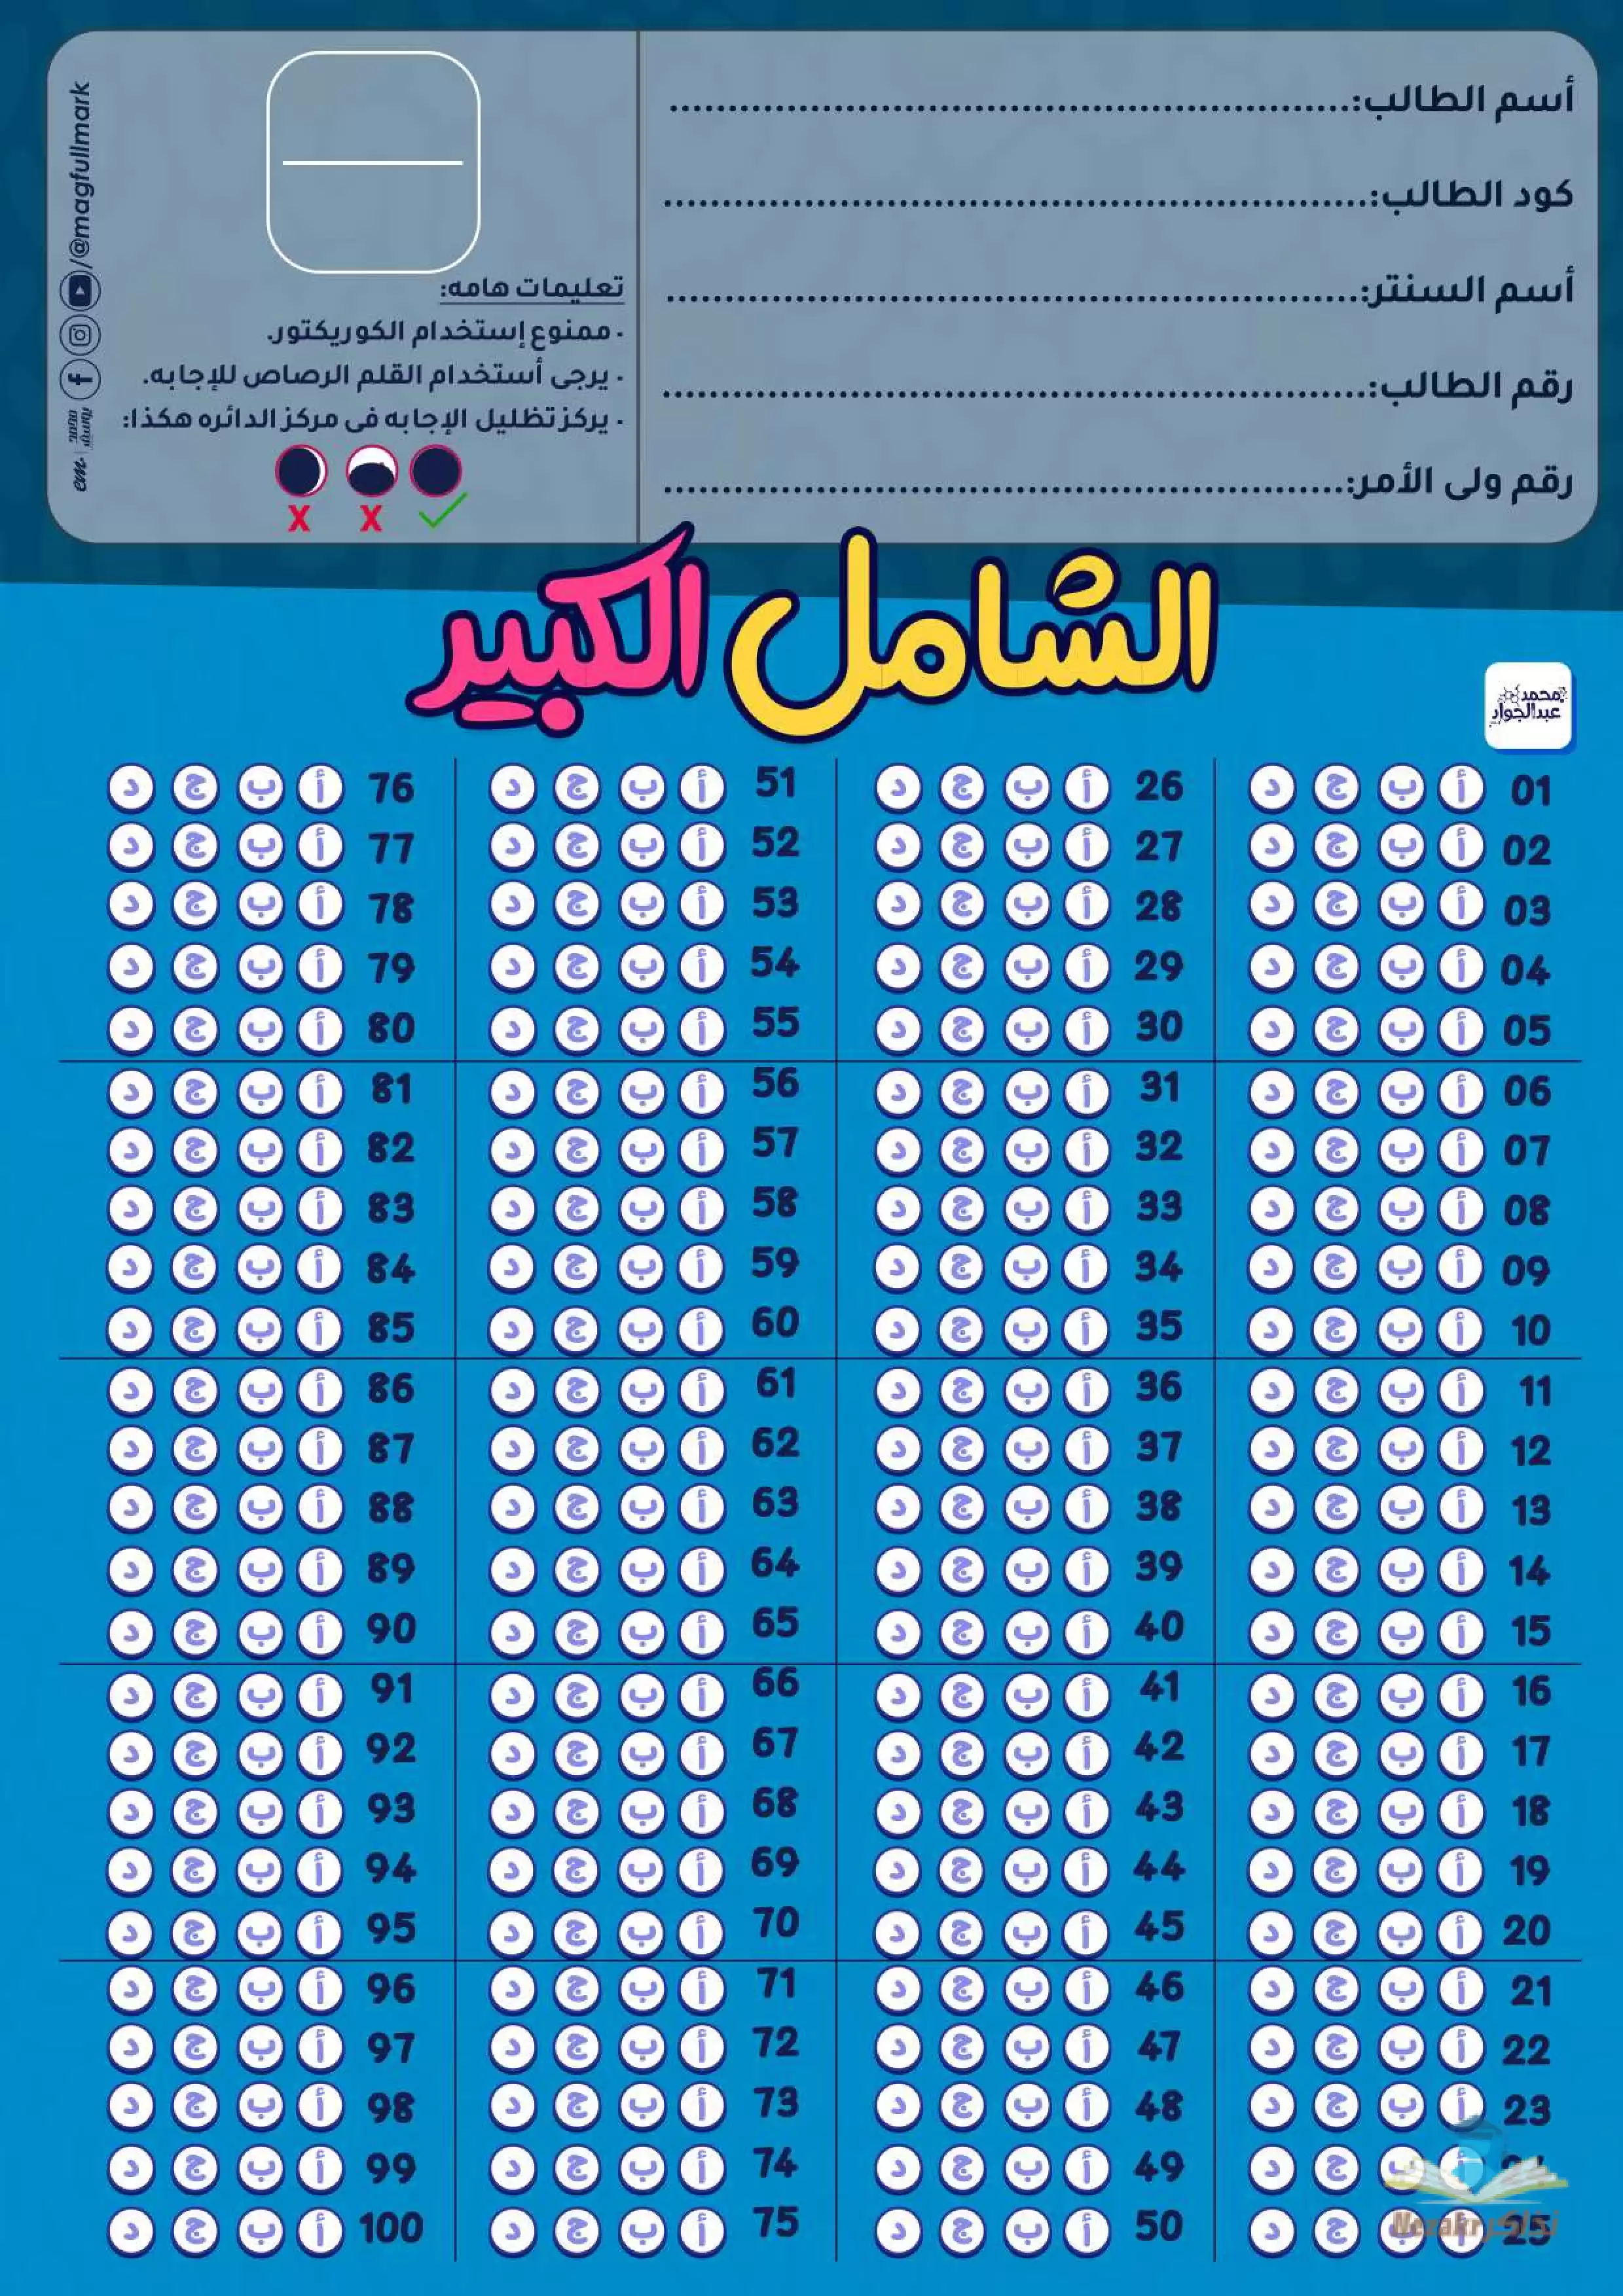 12 اختبار شامل (100 سؤال لكل اختبار) على منهج الكيمياء كاملاً للصف الثالث الثانوي من مستر محمد عبدالجواد